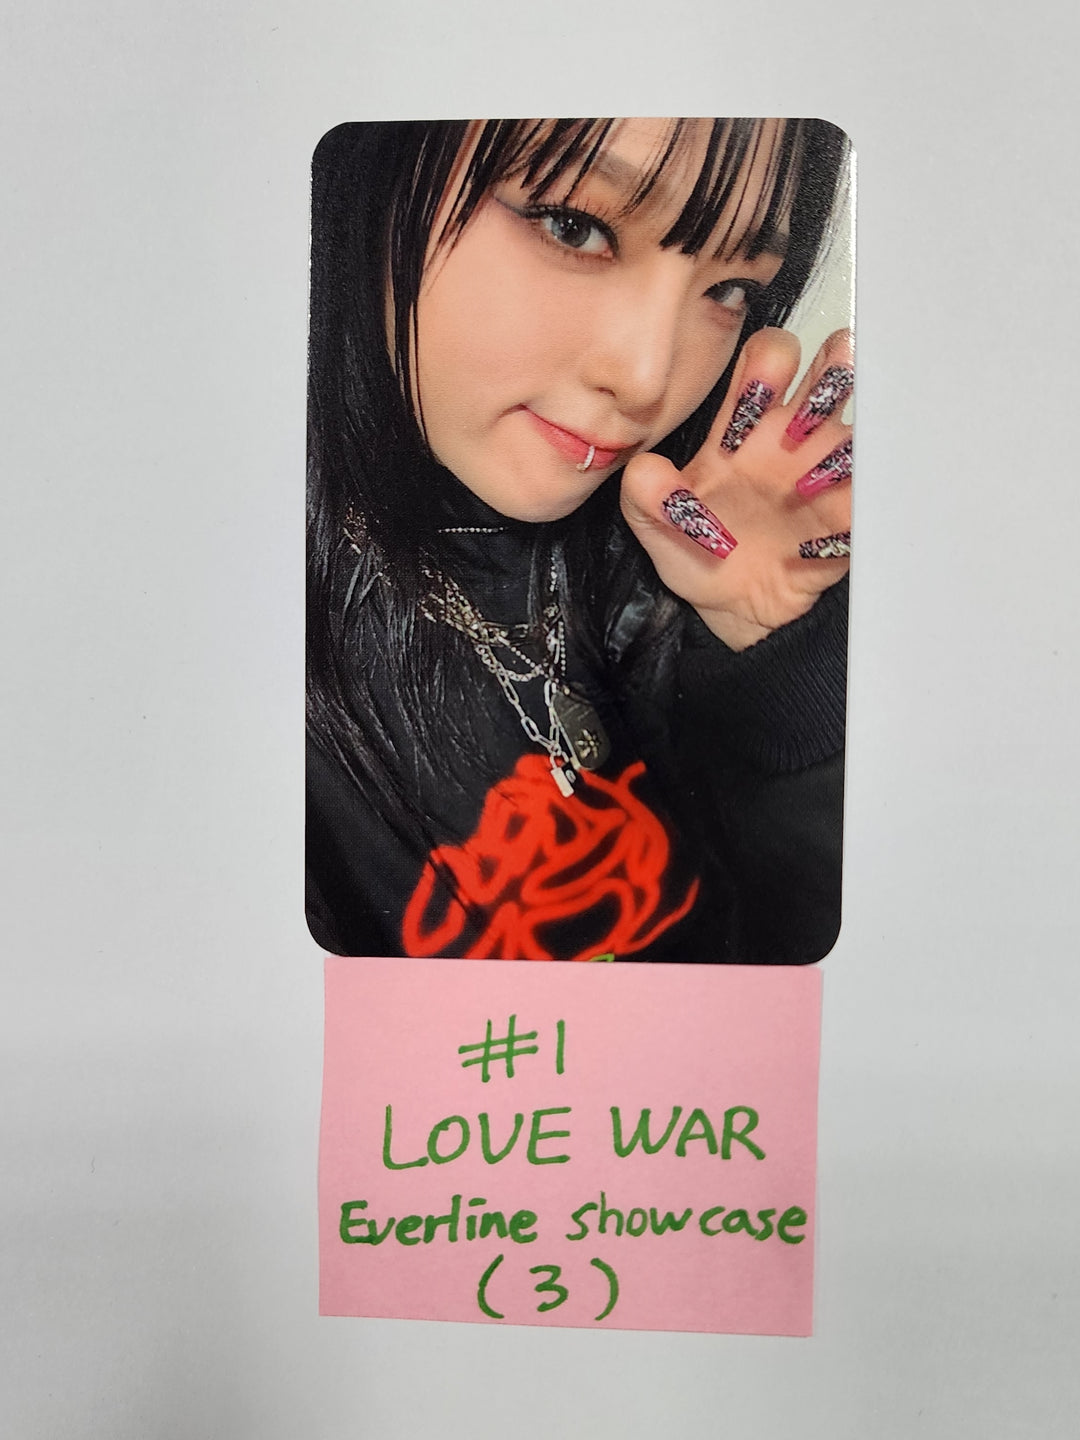 YENA 「LOVE WAR」 - Everline 予約特典フォトカード